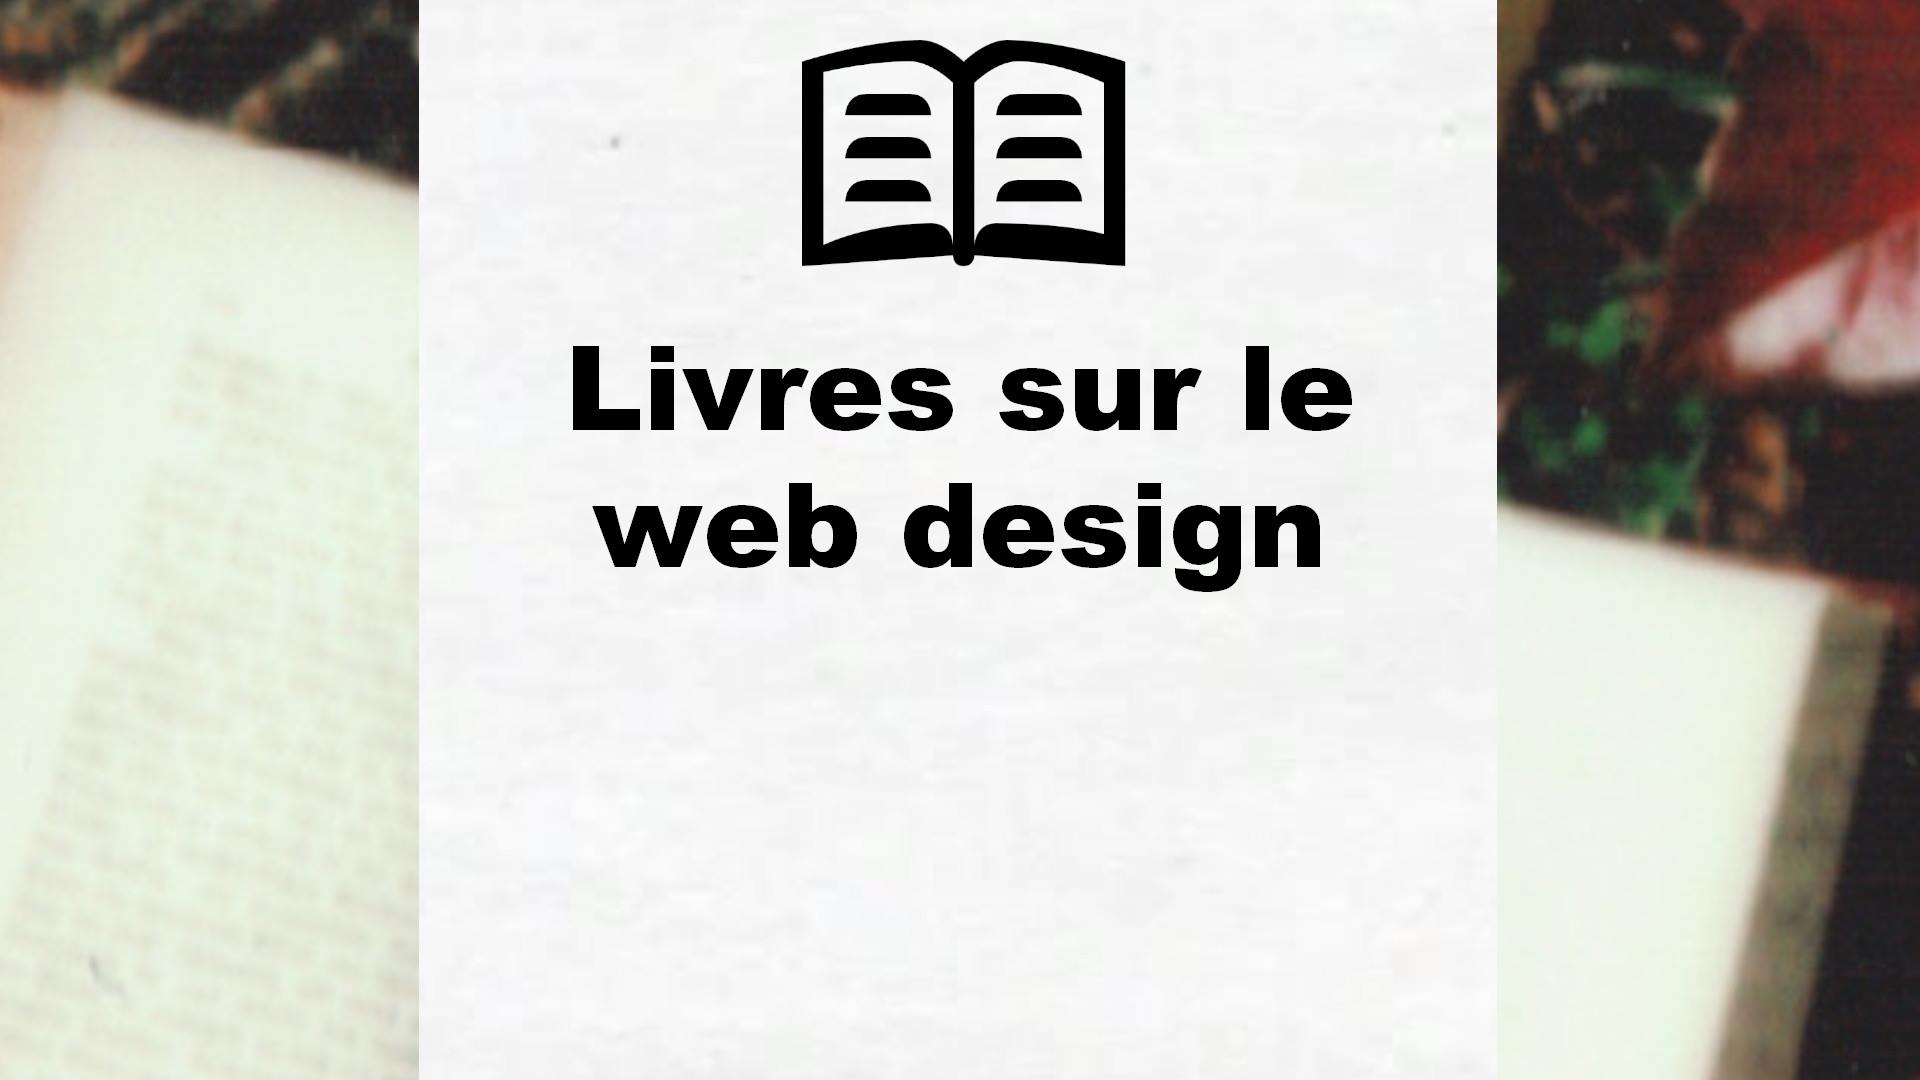 Livres sur le web design